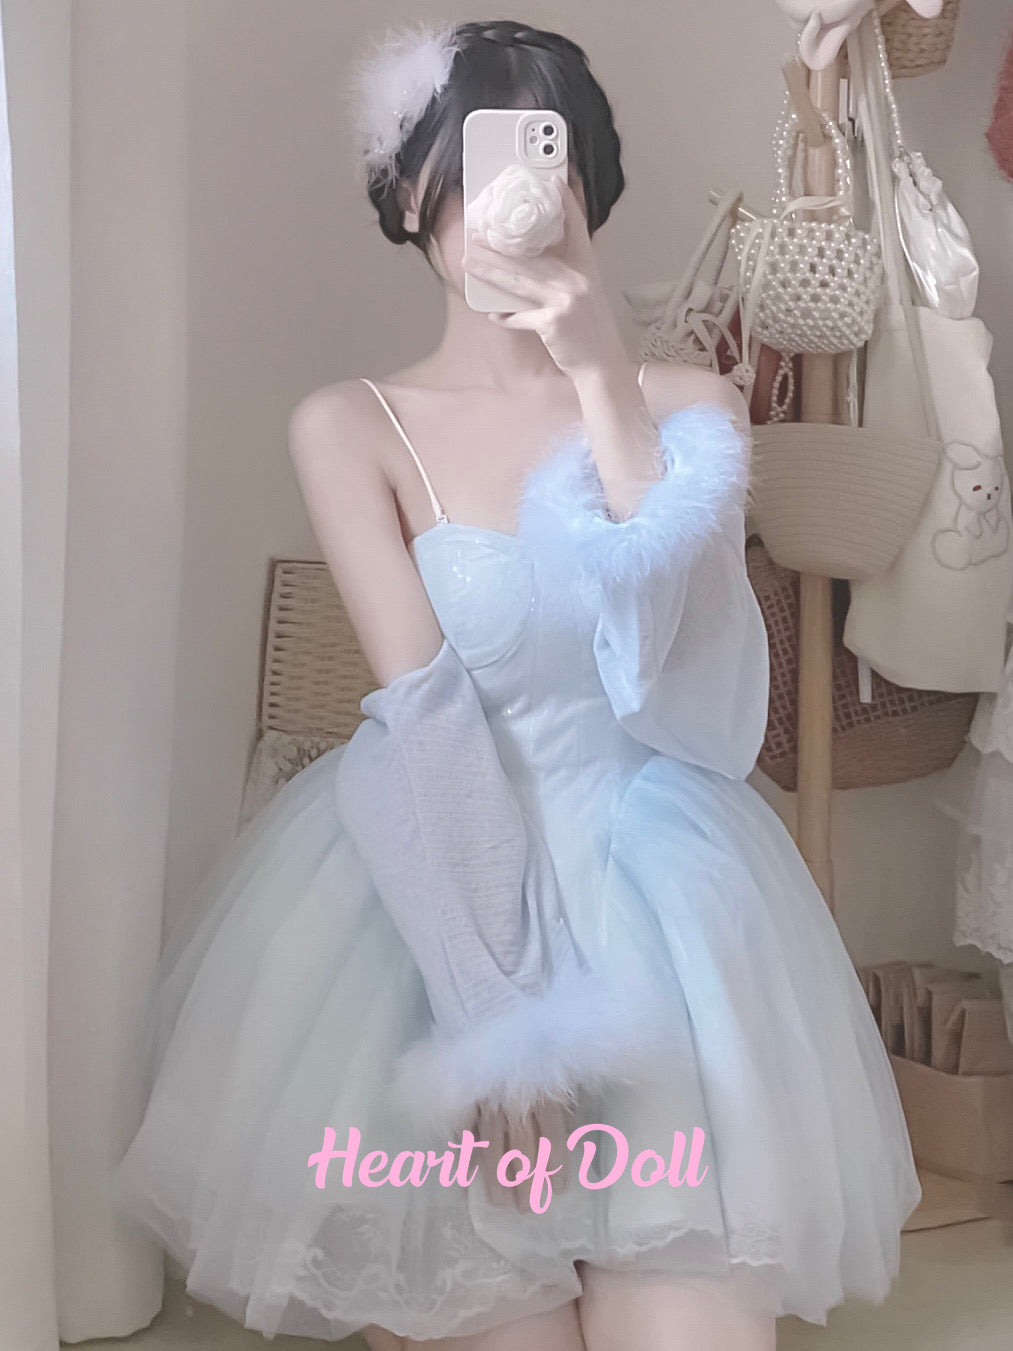 ♡ Лебедь ♡ - Балеткорное платье